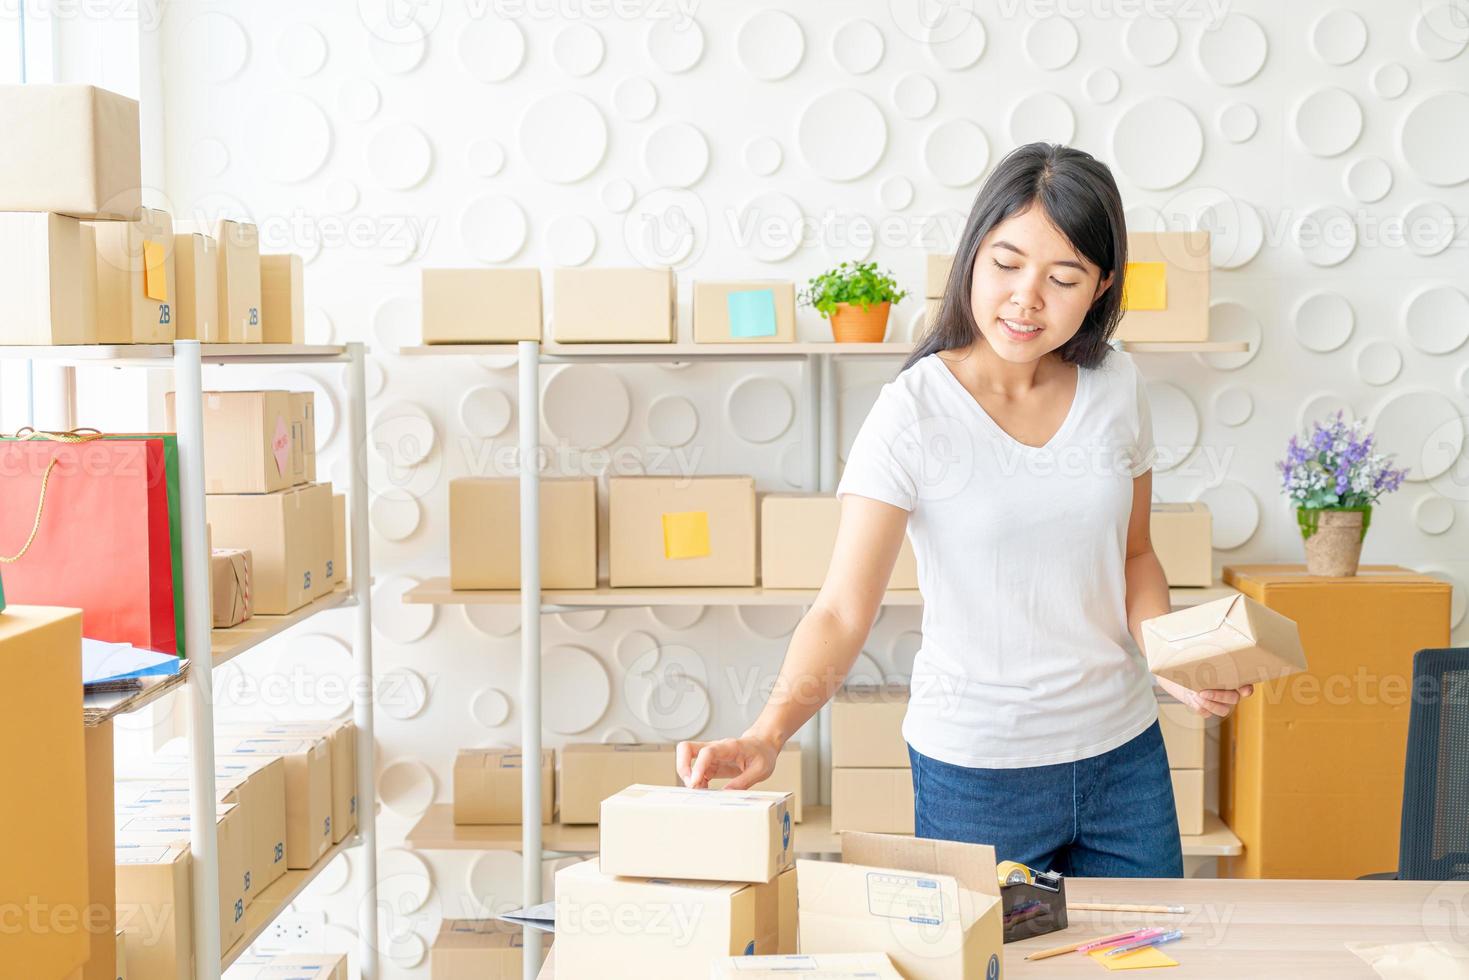 Aziatische vrouw bedrijfseigenaar die thuis werkt met verpakkingsdoos op de werkplek - online winkelen mkb-ondernemer of freelance werkconcept foto